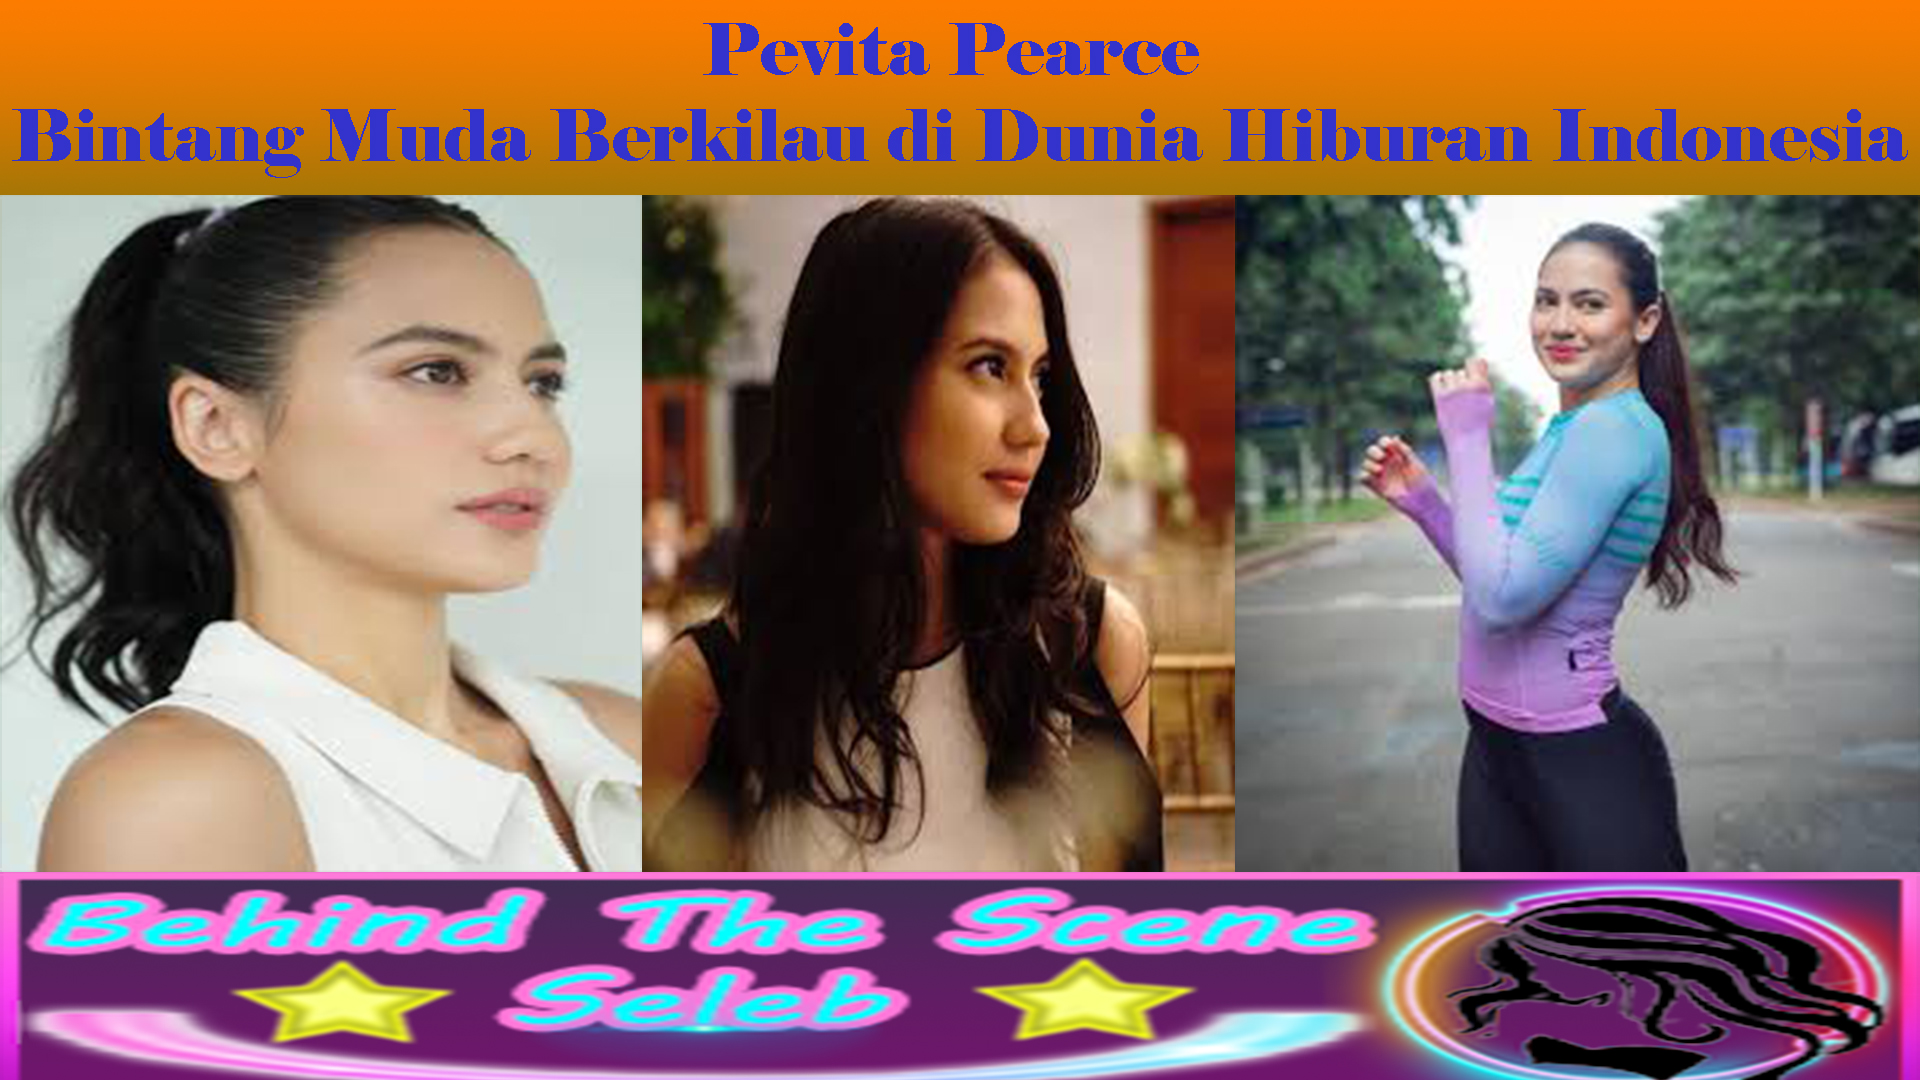 Karier Pevita Pearce: Bintang Muda Berkilau di Dunia Hiburan Indonesia